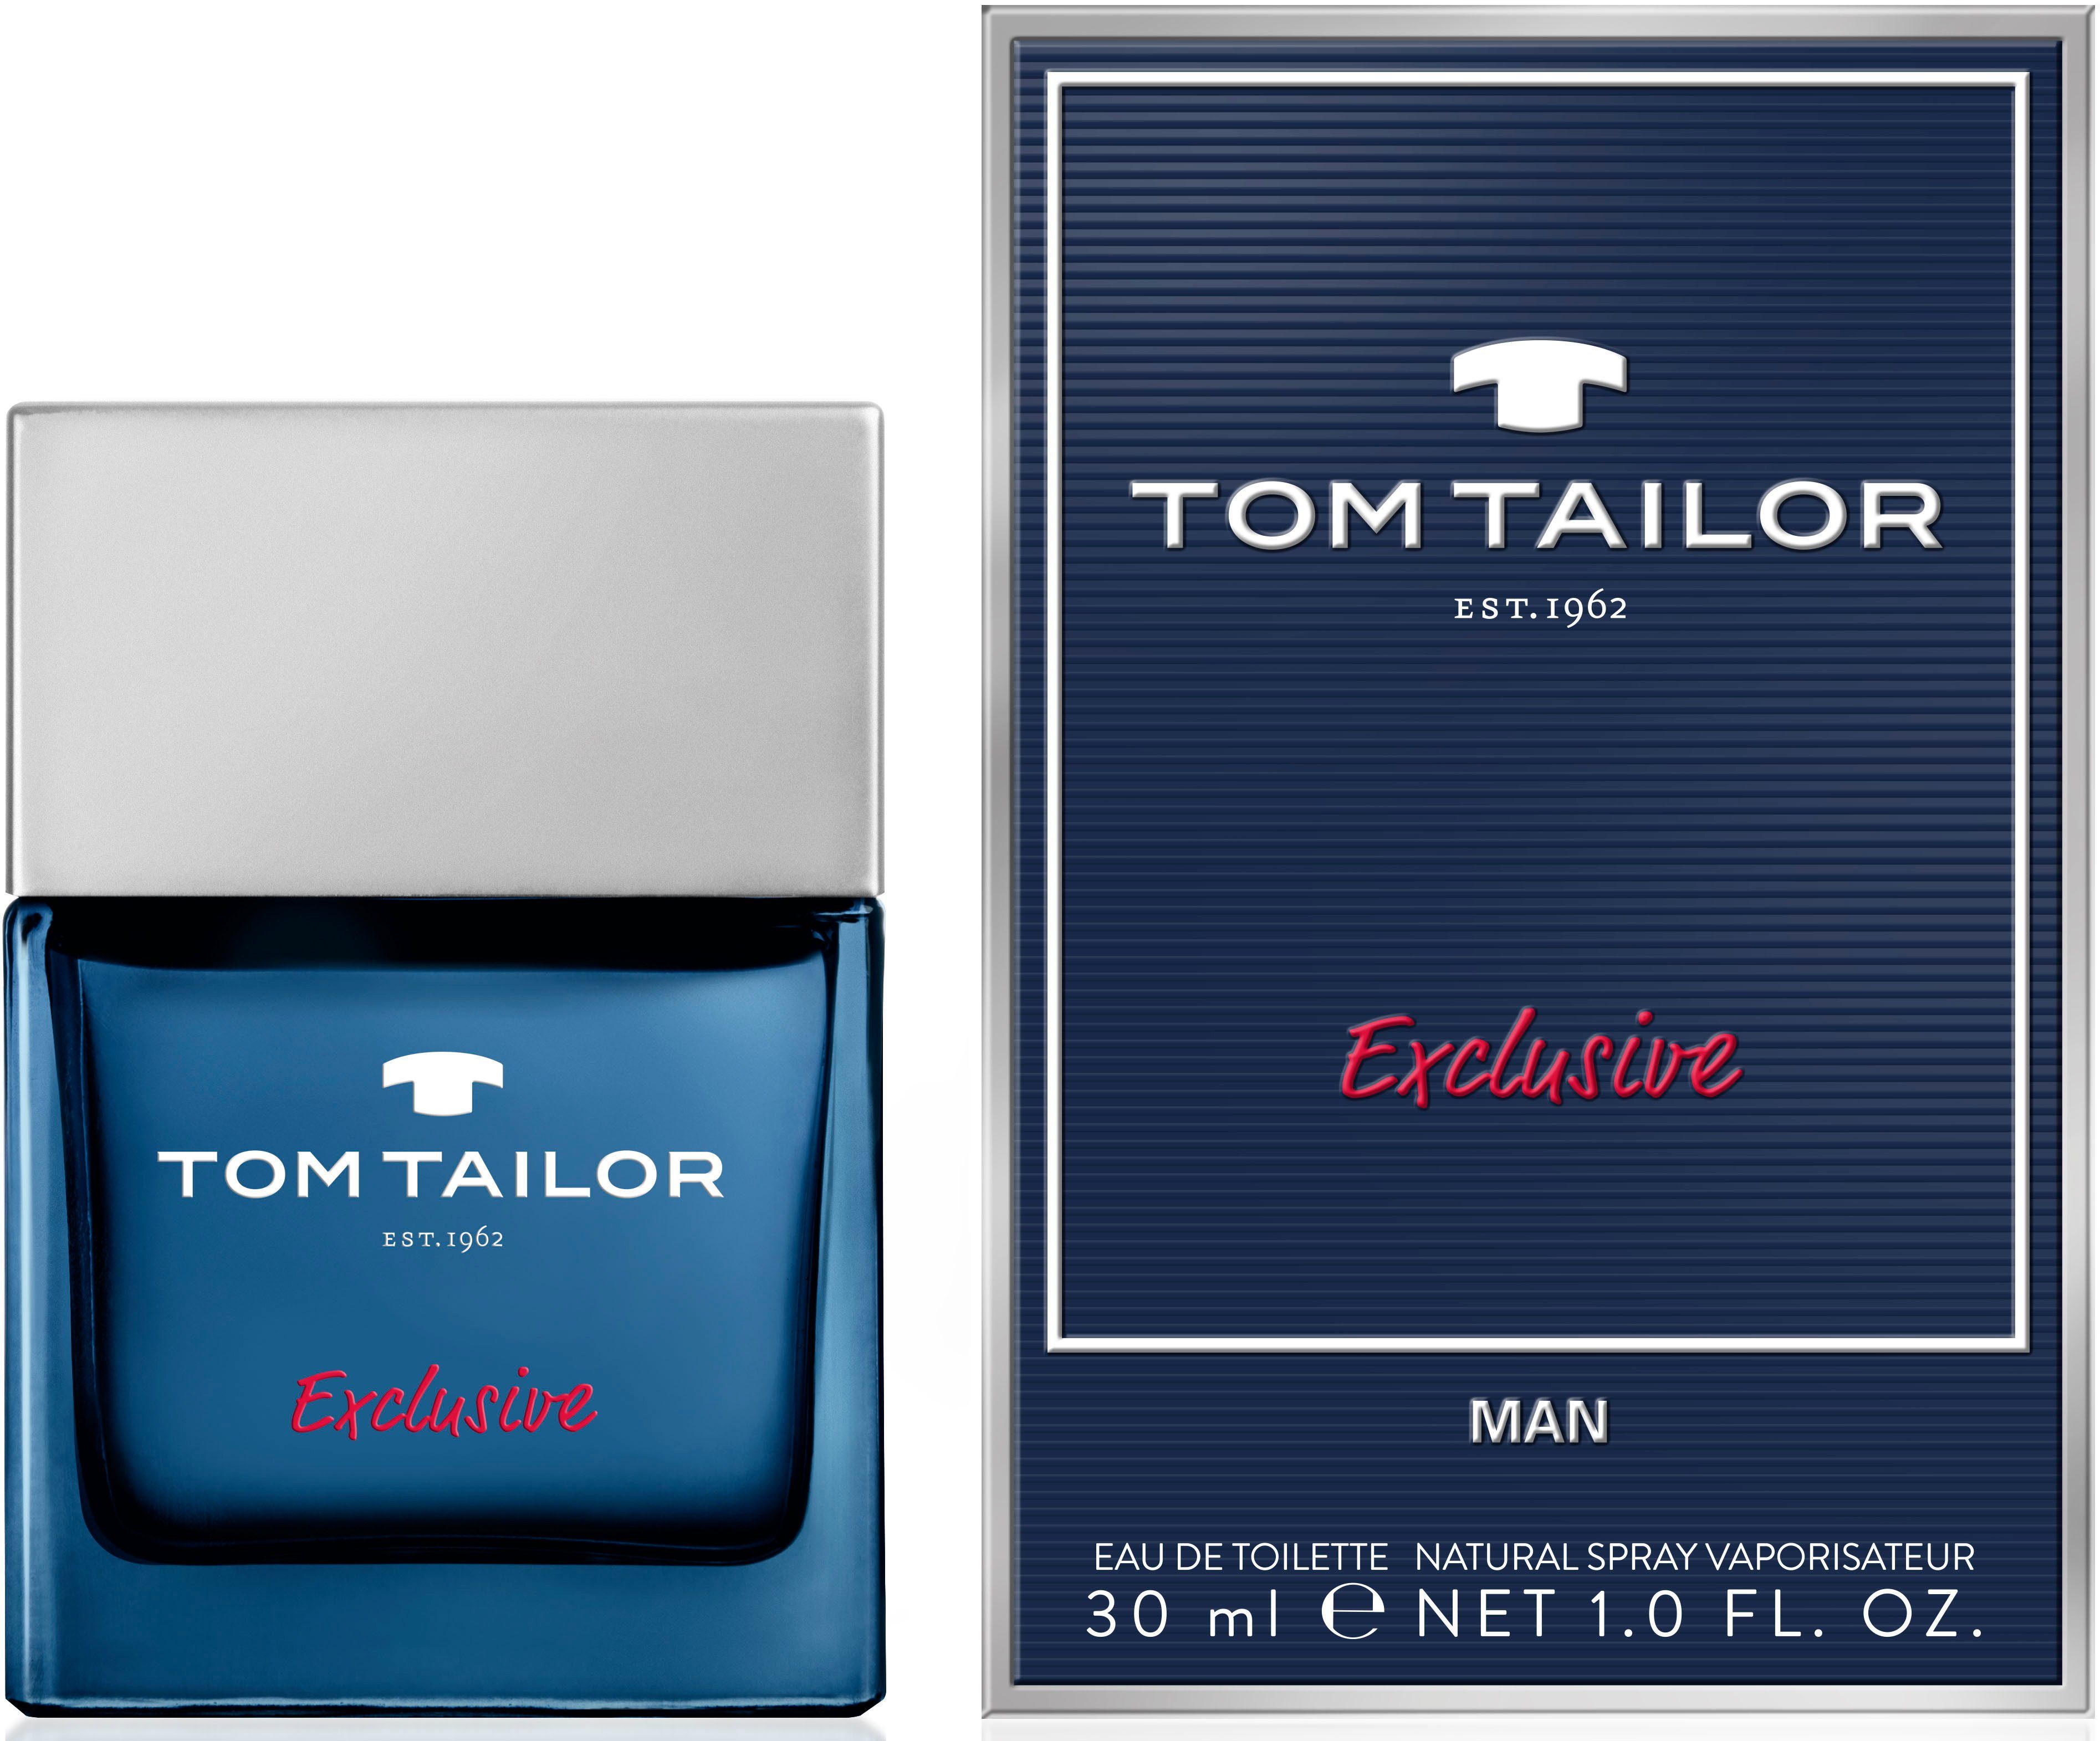 TAILOR Toilette Tom de Man Tailor Eau TOM Exclusive